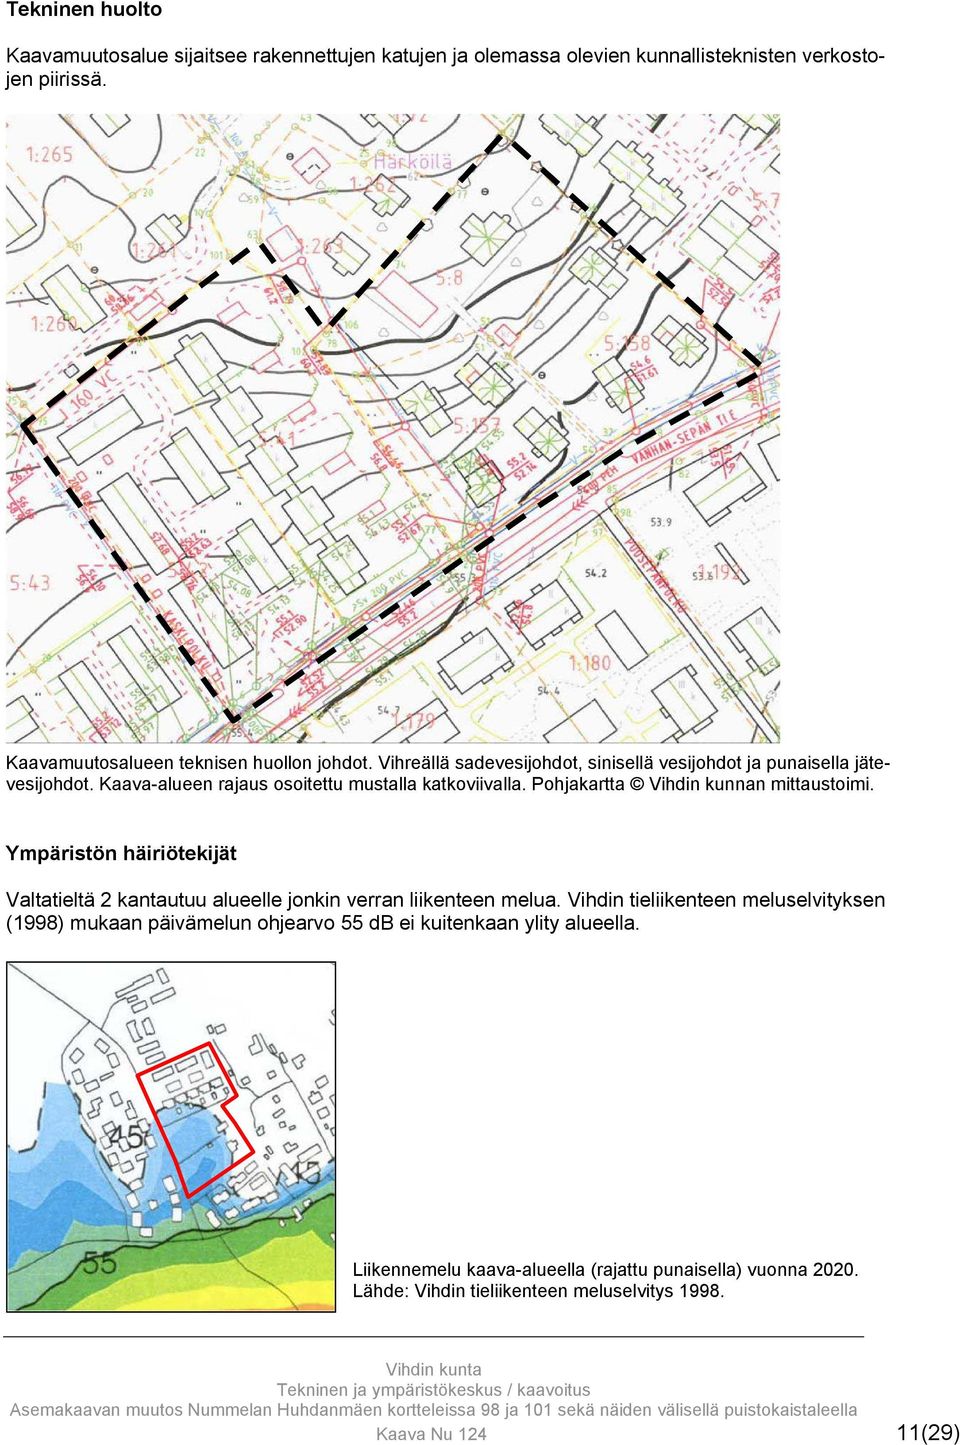 Kaava-alueen rajaus osoitettu mustalla katkoviivalla. Pohjakartta Vihdin kunnan mittaustoimi.